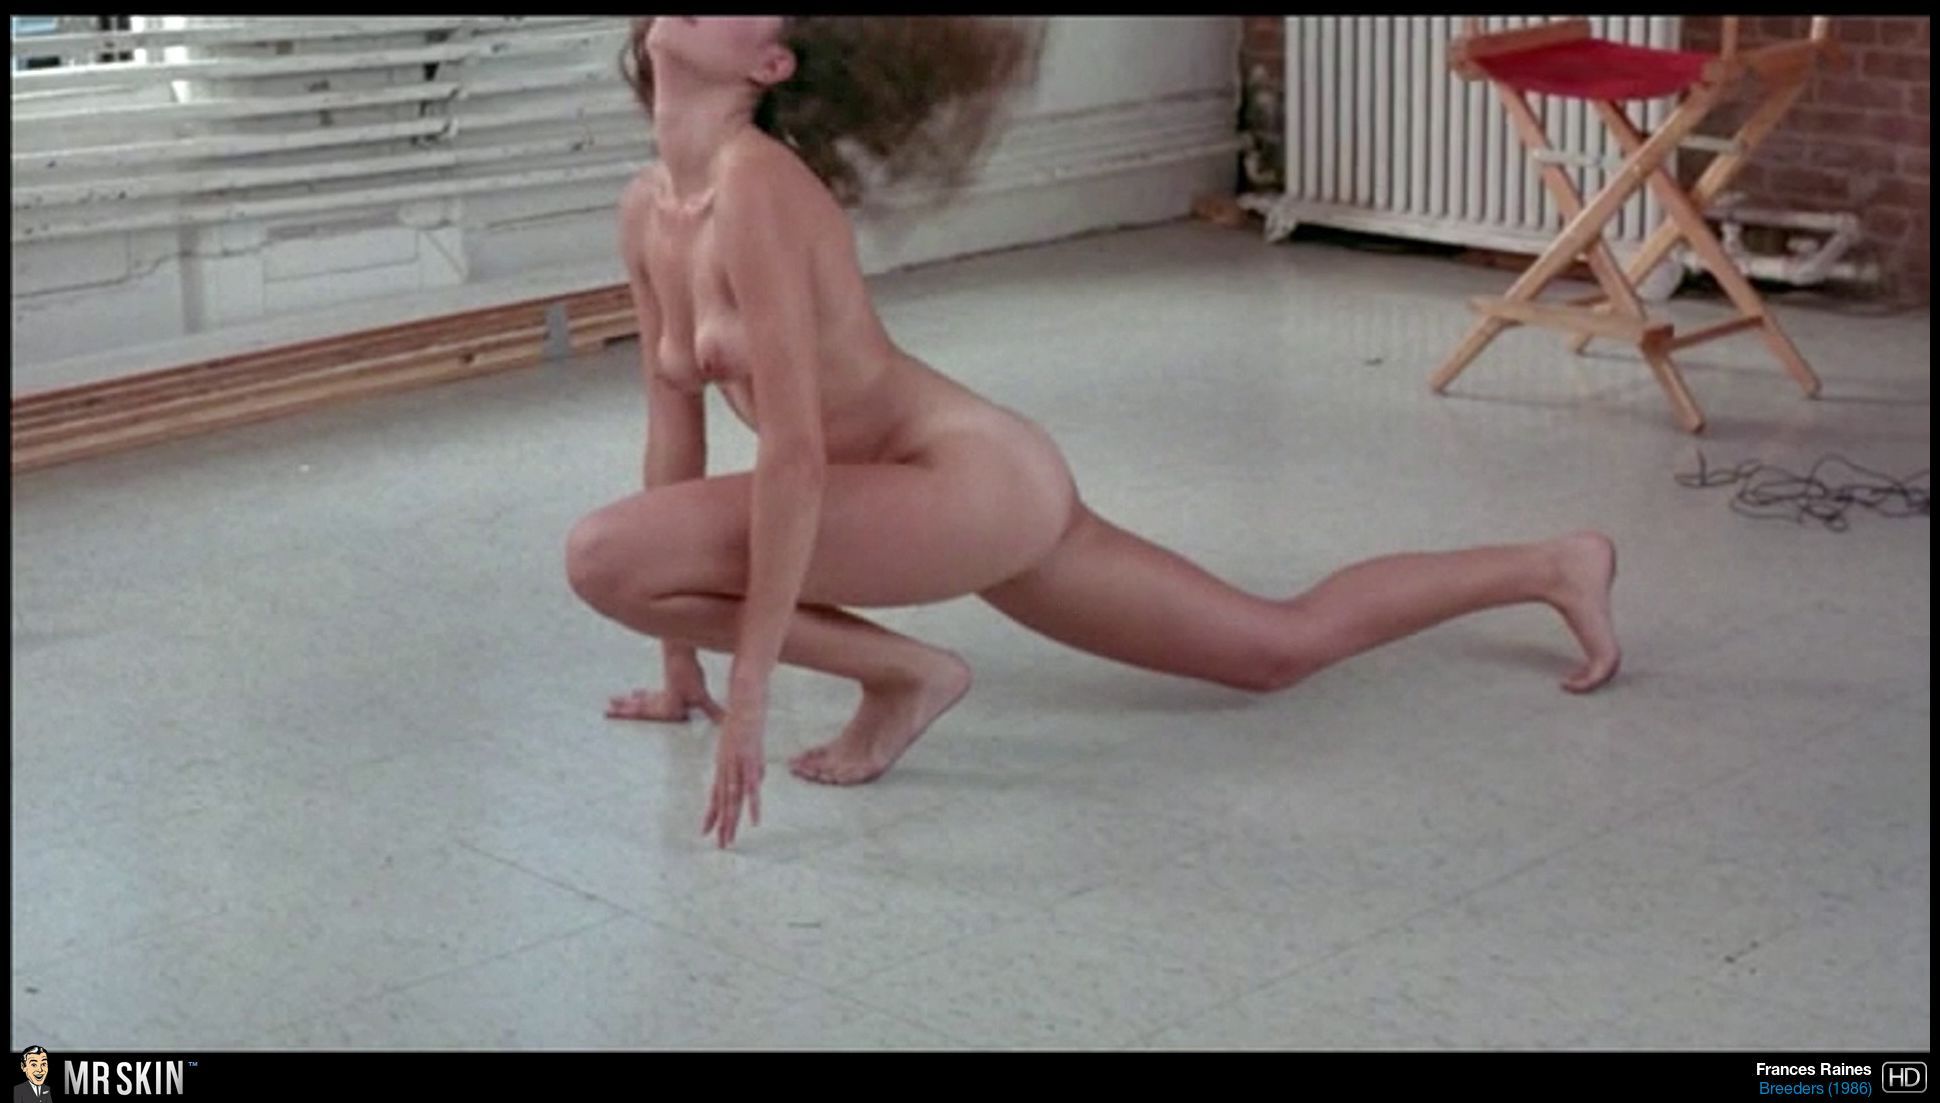 Top Ten Horror Movie Nude Scenes of the 80s